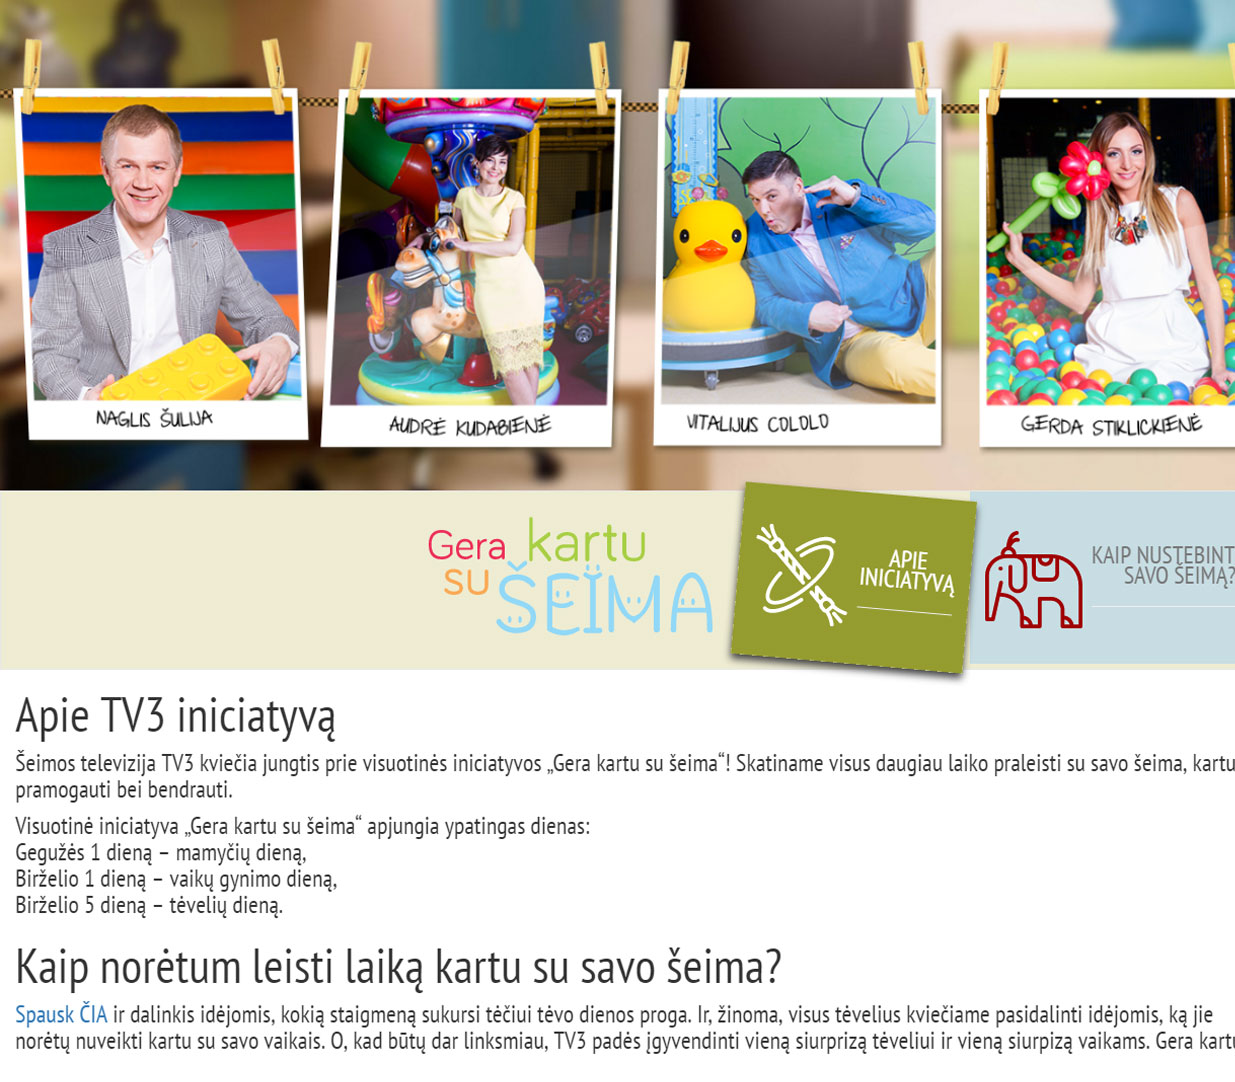 gerakartu.tv3.lt - TV global initiative 